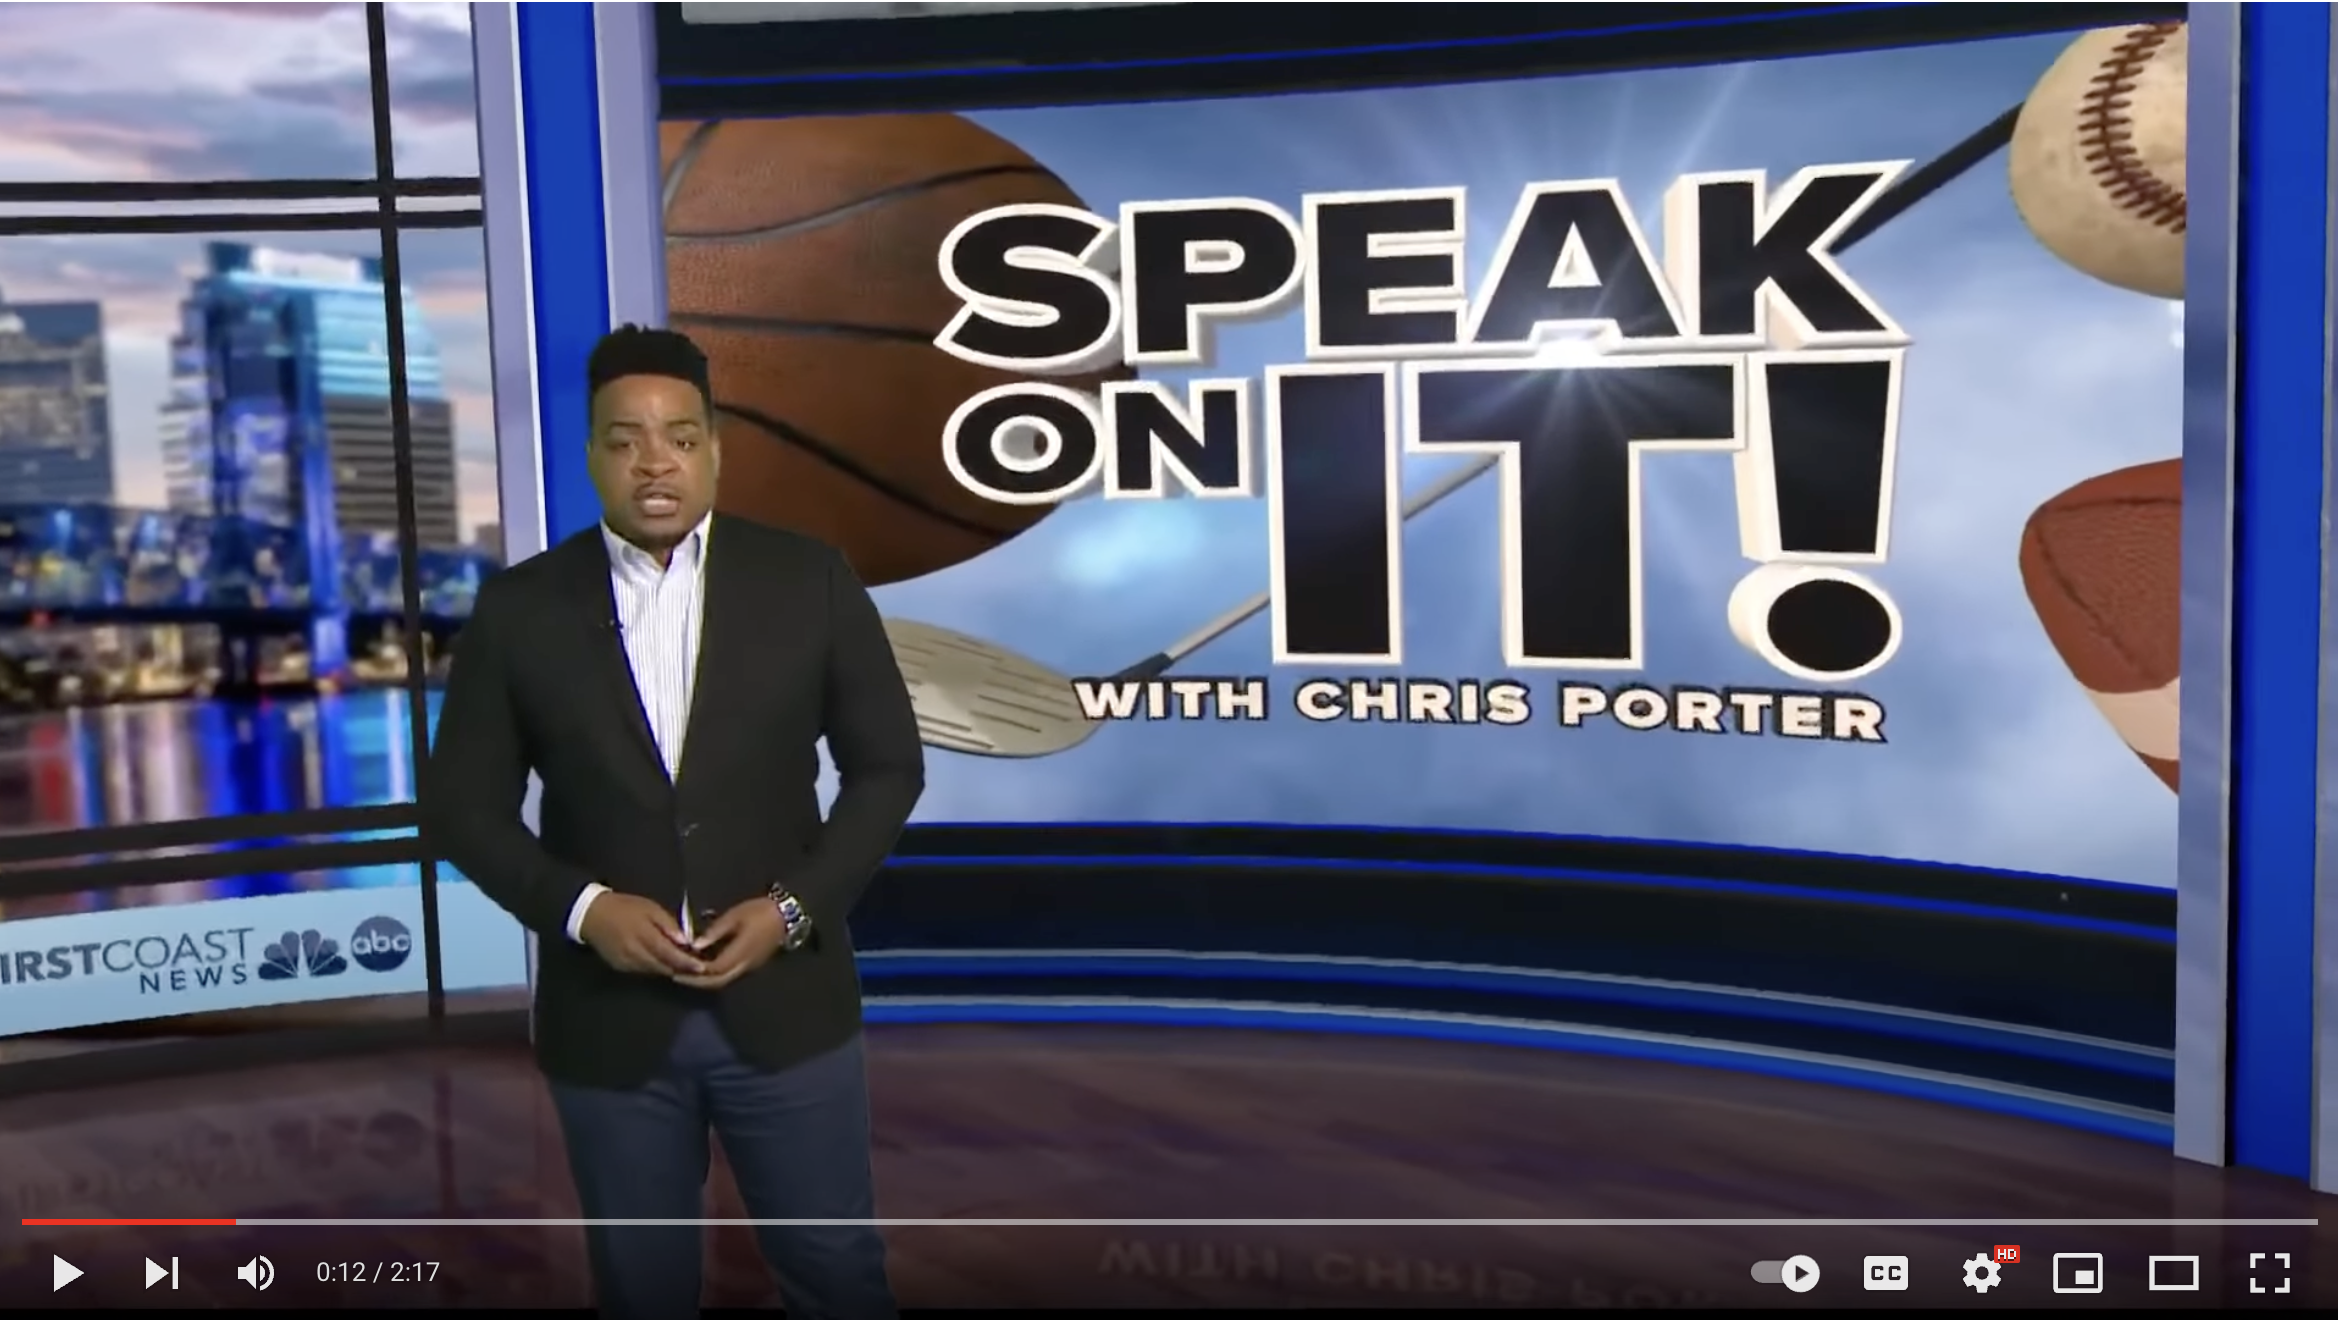 screen shot of video from news reporter Chris Porter's Speak on It! segment